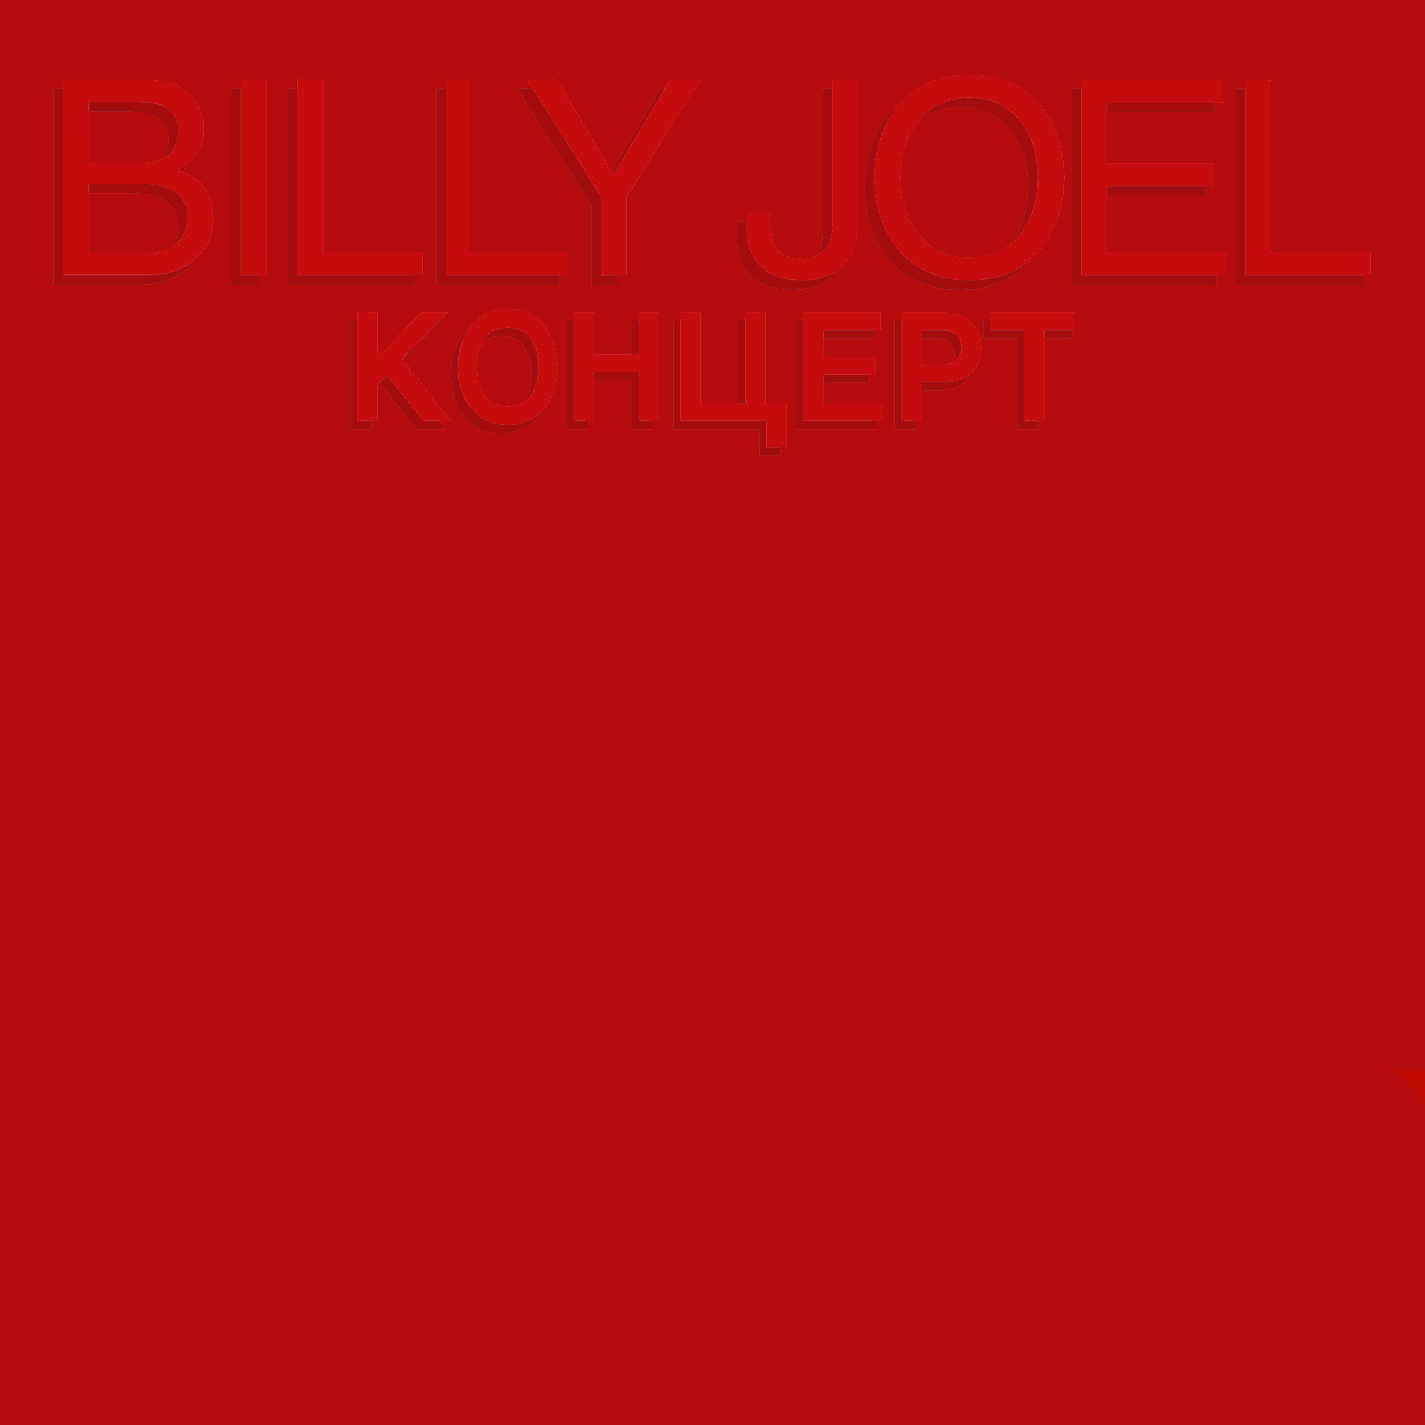 Billy Joel (ビリー・ジョエル)『コンツェルト-ライヴ・イン・U.S.S.R.- (КОНЦЕРТ)』高画質ジャケット画像